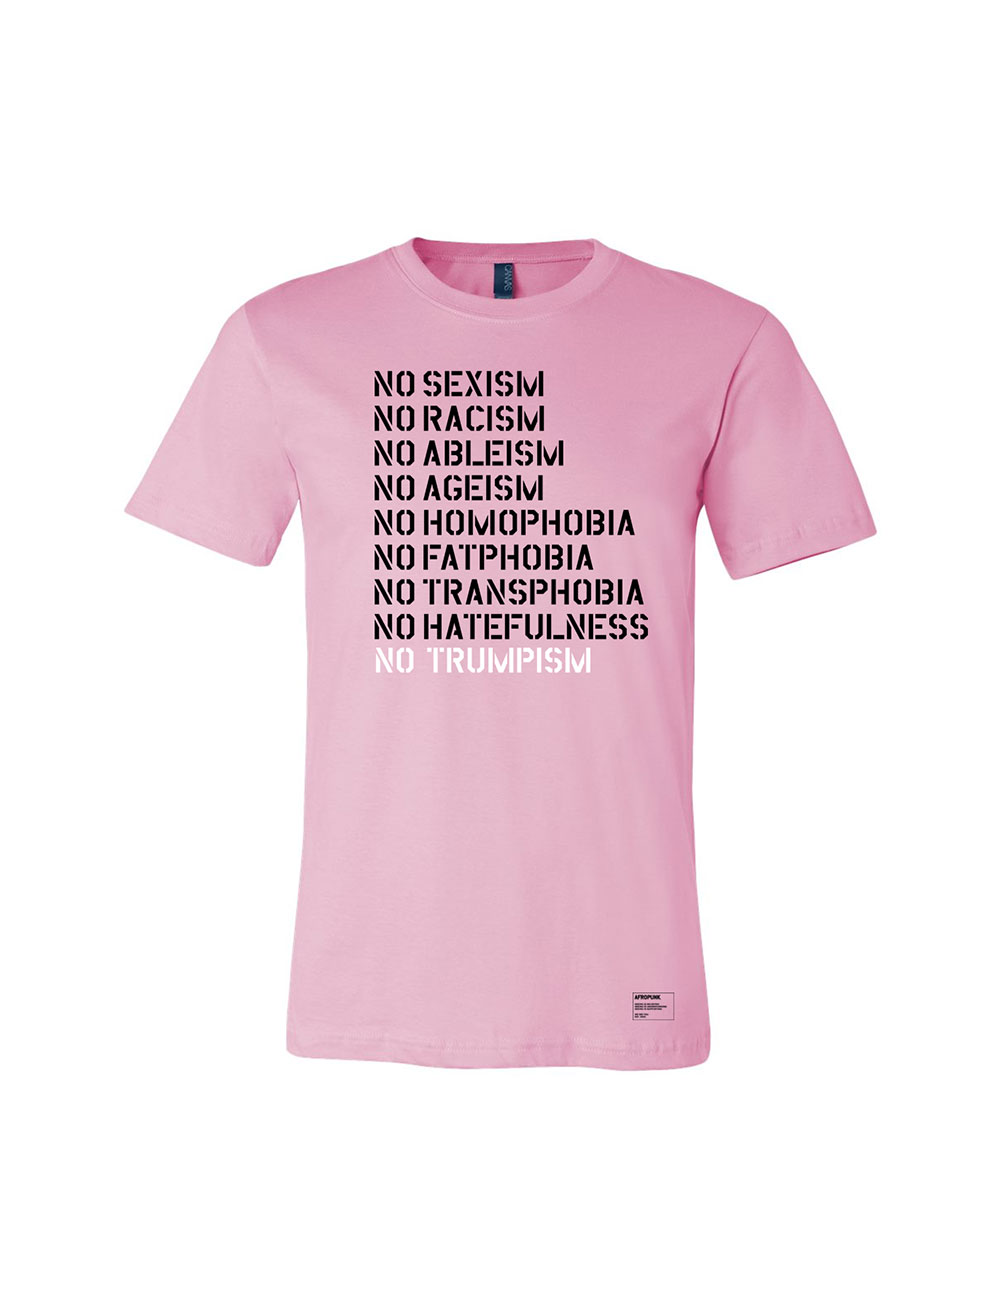 Afropunk - Official Merch Shop - T-Shirts - No Trumpism Pink tee